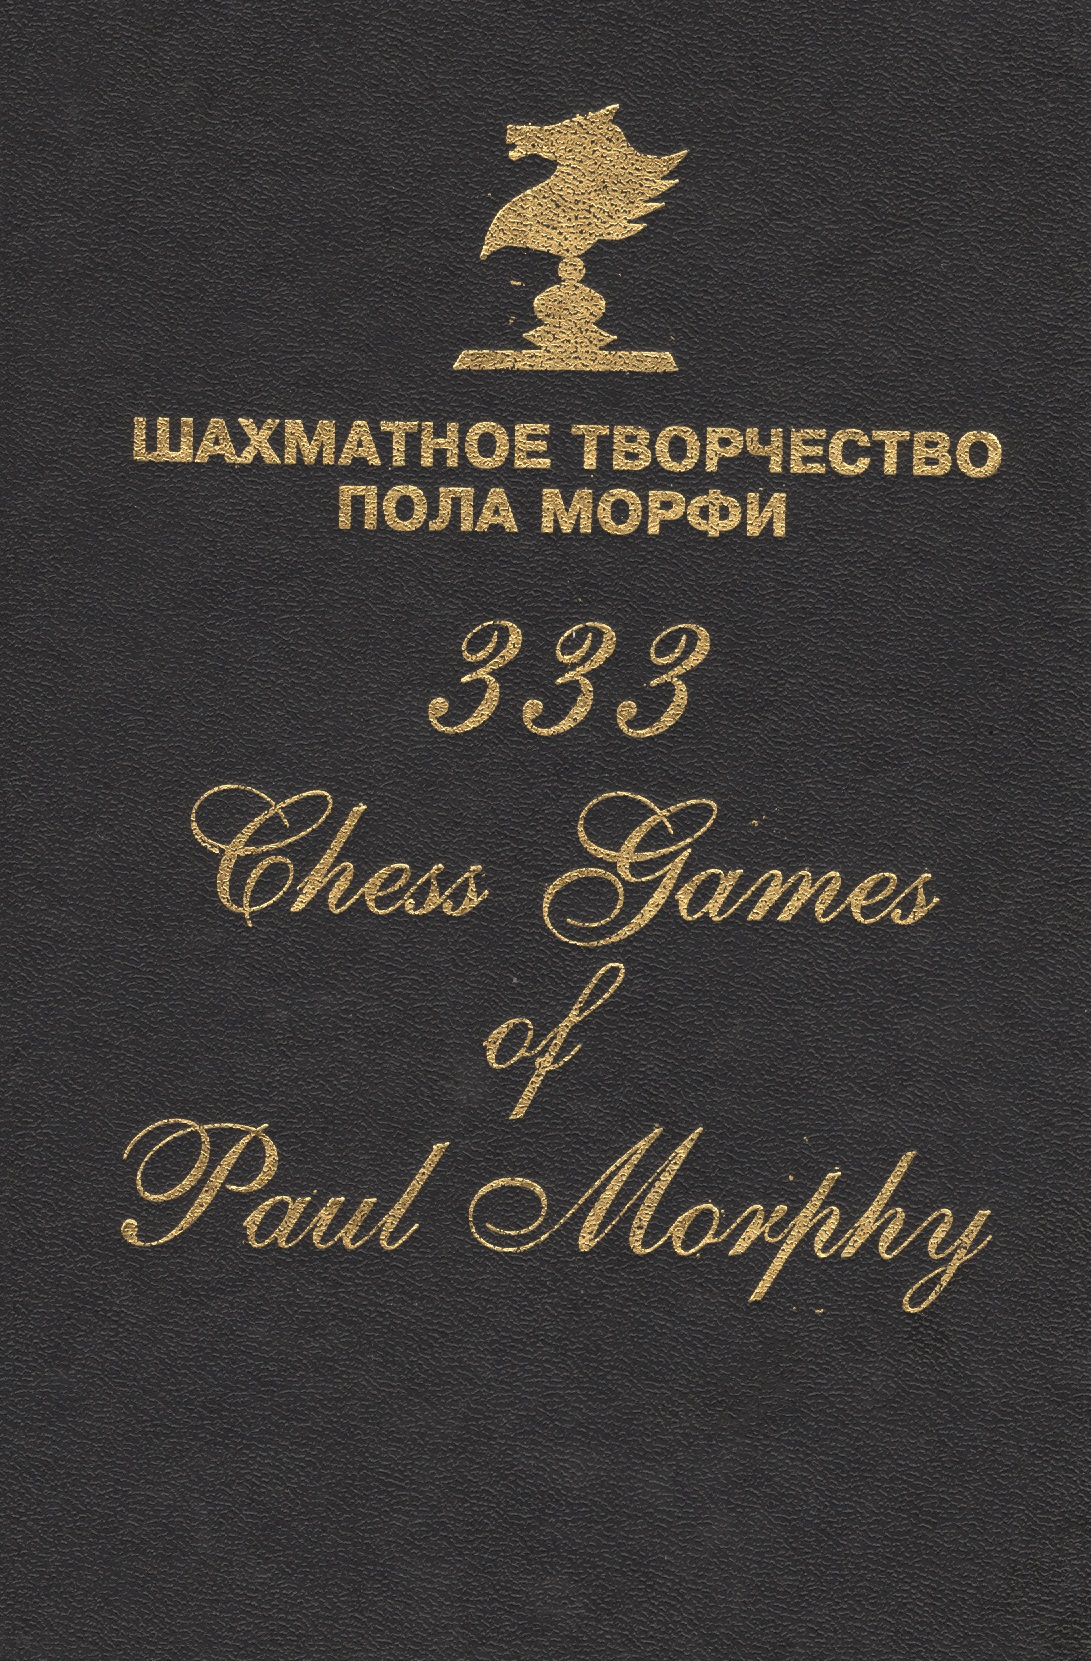 Шахматное творчество Пола Морфи 333 Chess games of Paul Morphy (Сафиуллин) шахматное творчество пола морфи сост сафиуллин р к